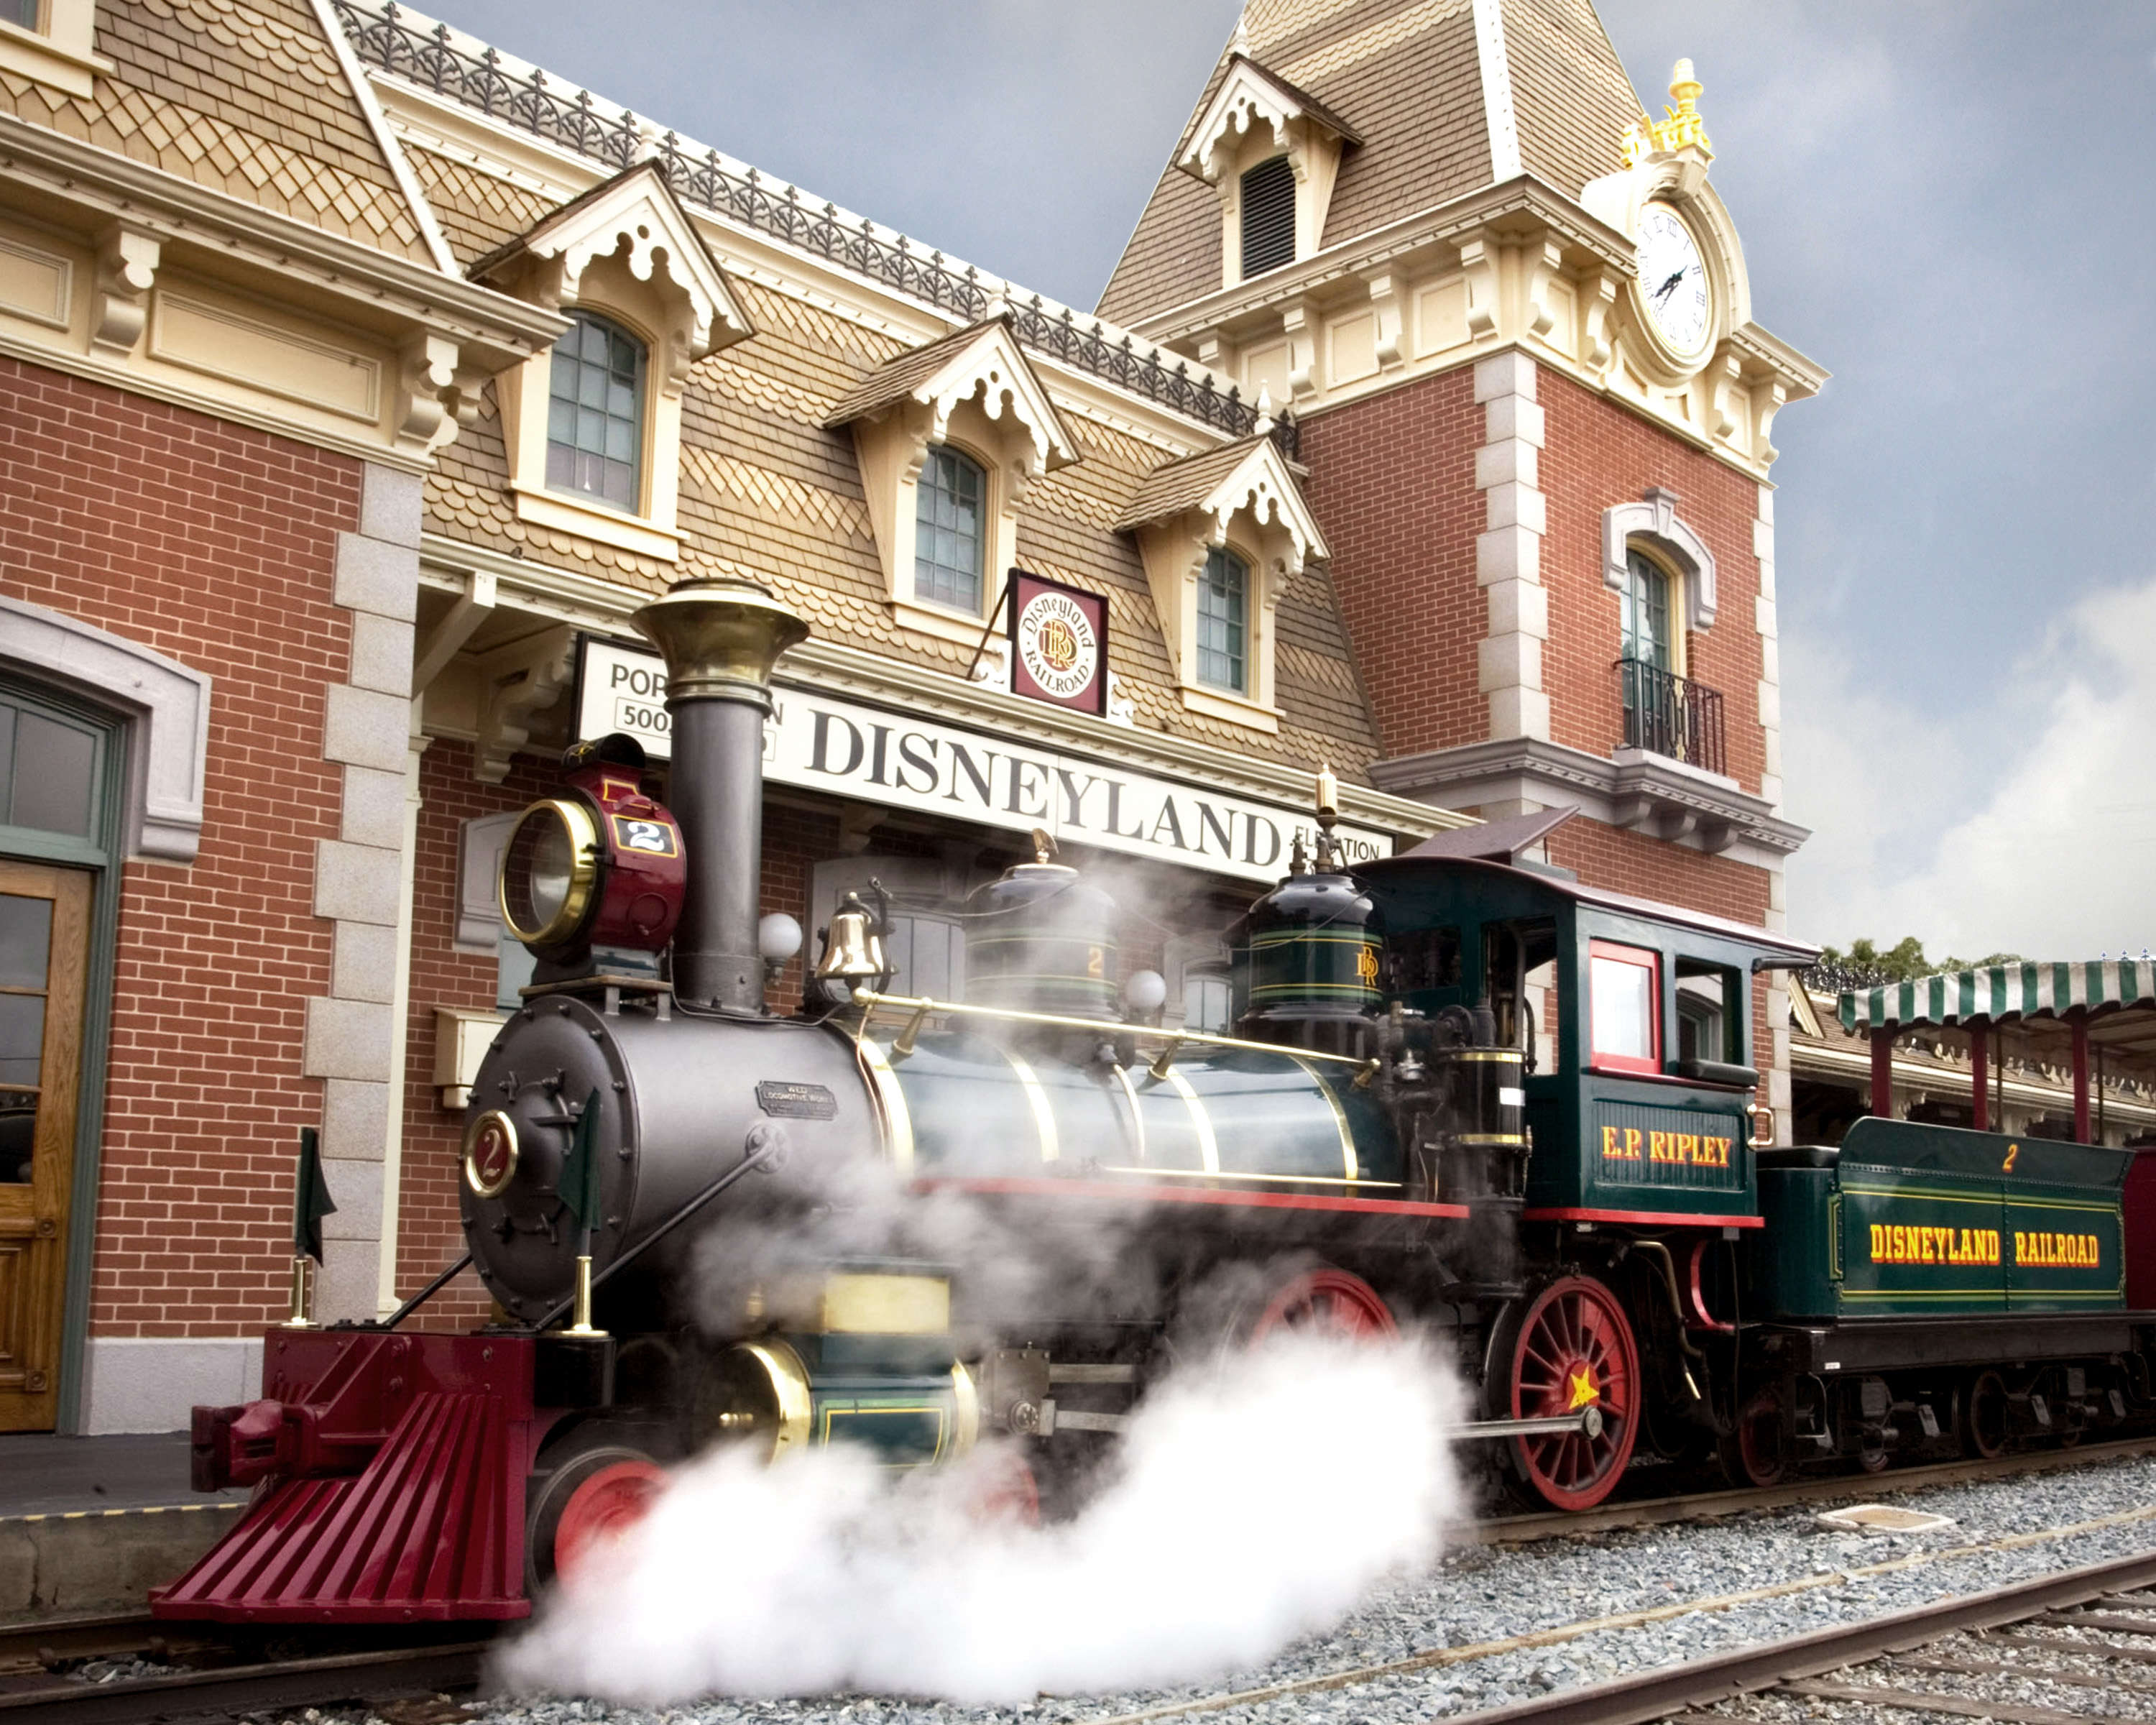 Disneyland steam train in front of a Disneyland sign